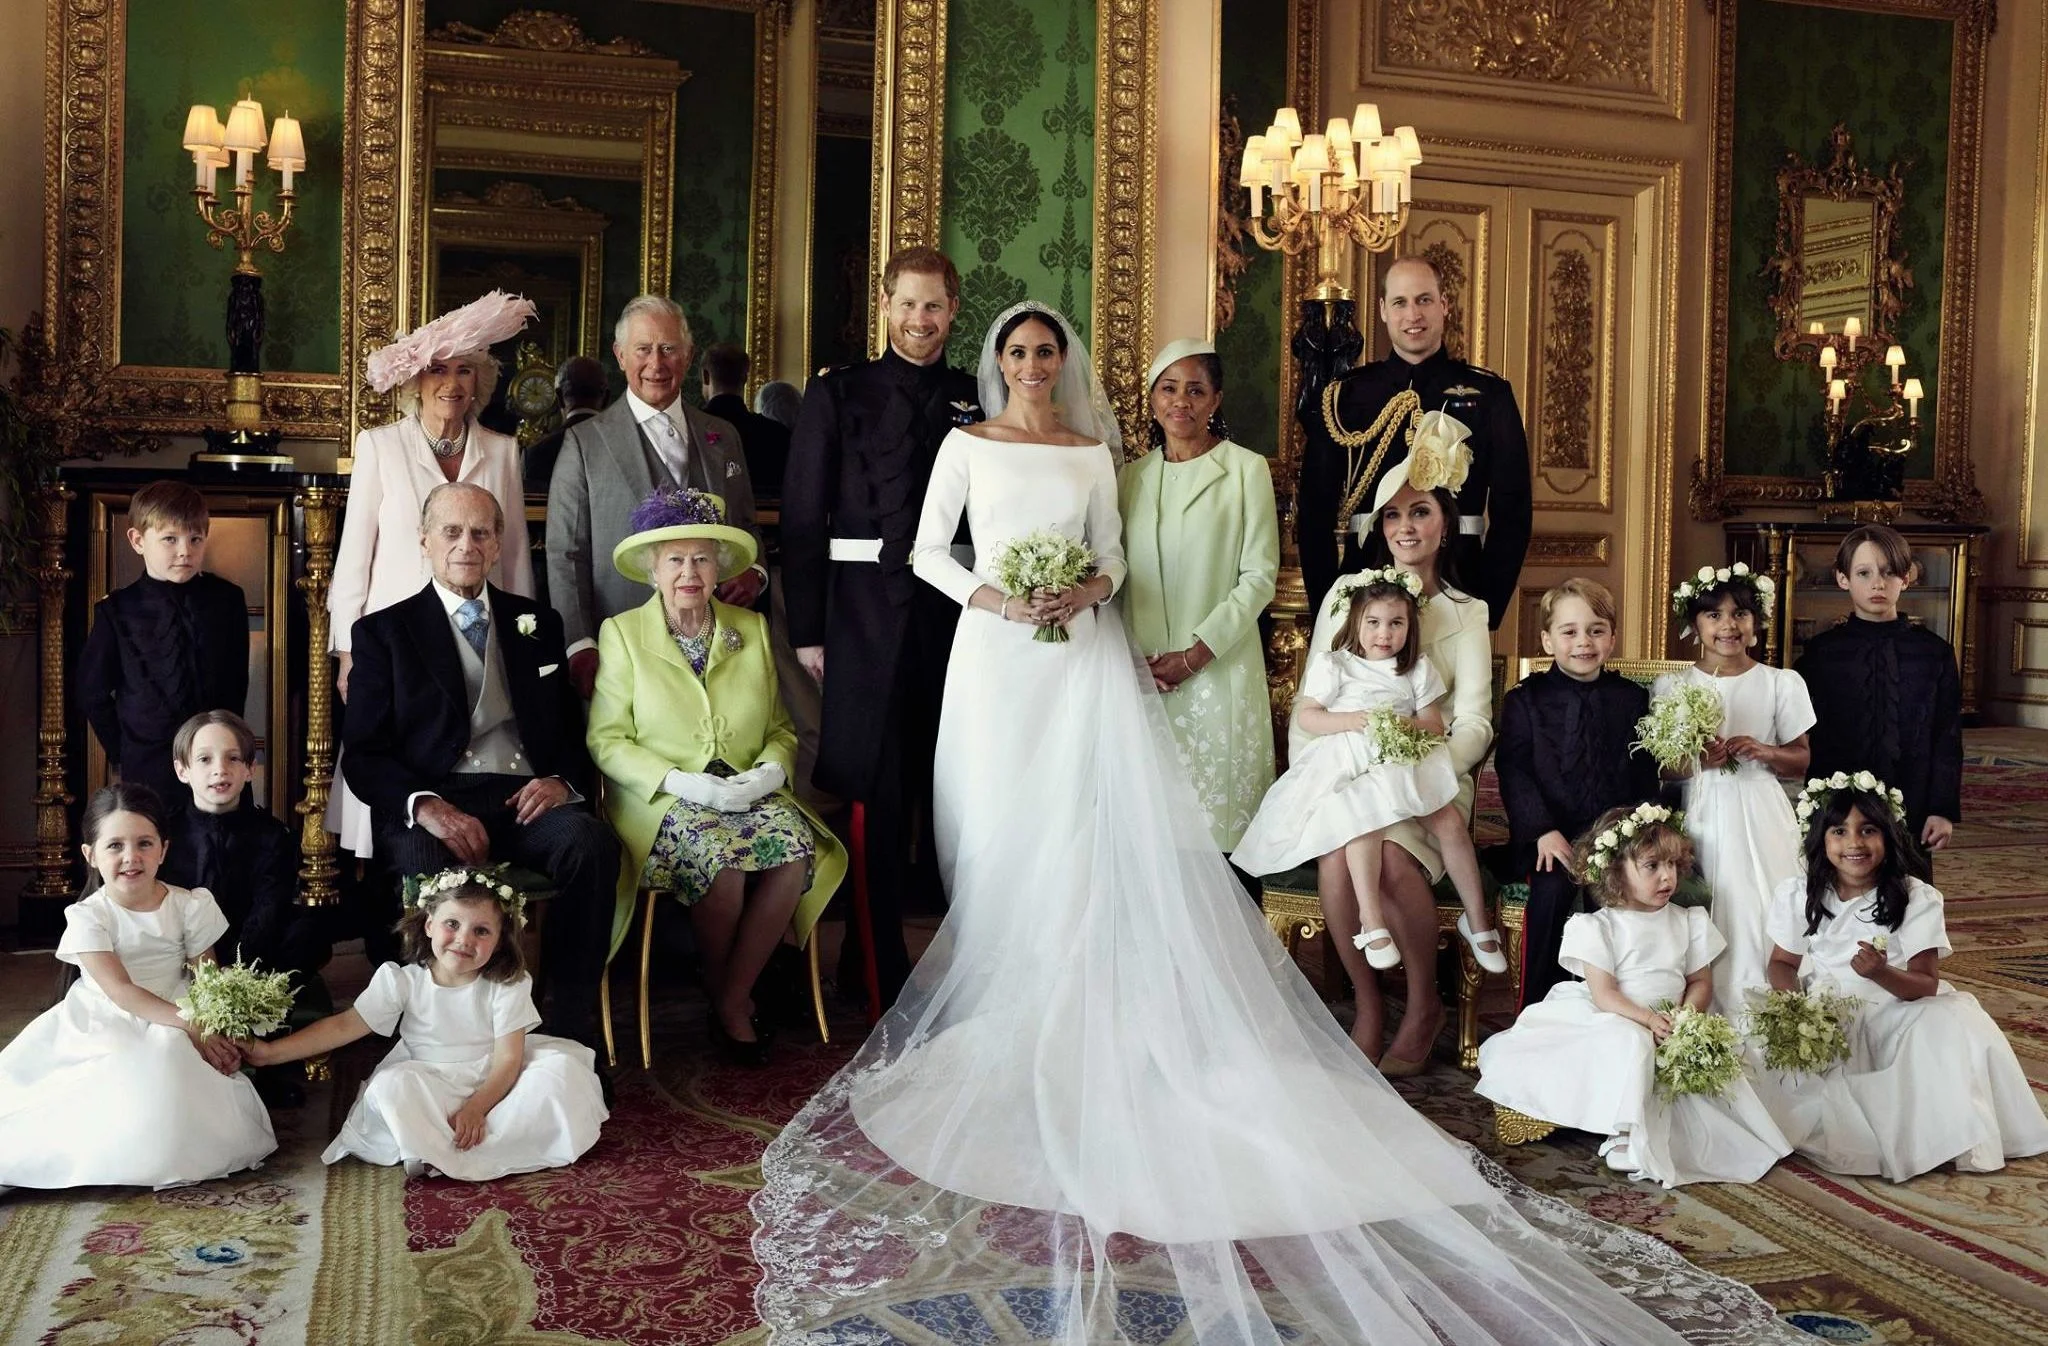 Модный дом Givenchy показал миру эскизы свадебного платья Меган Маркл, и они прекрасны - фото 385482